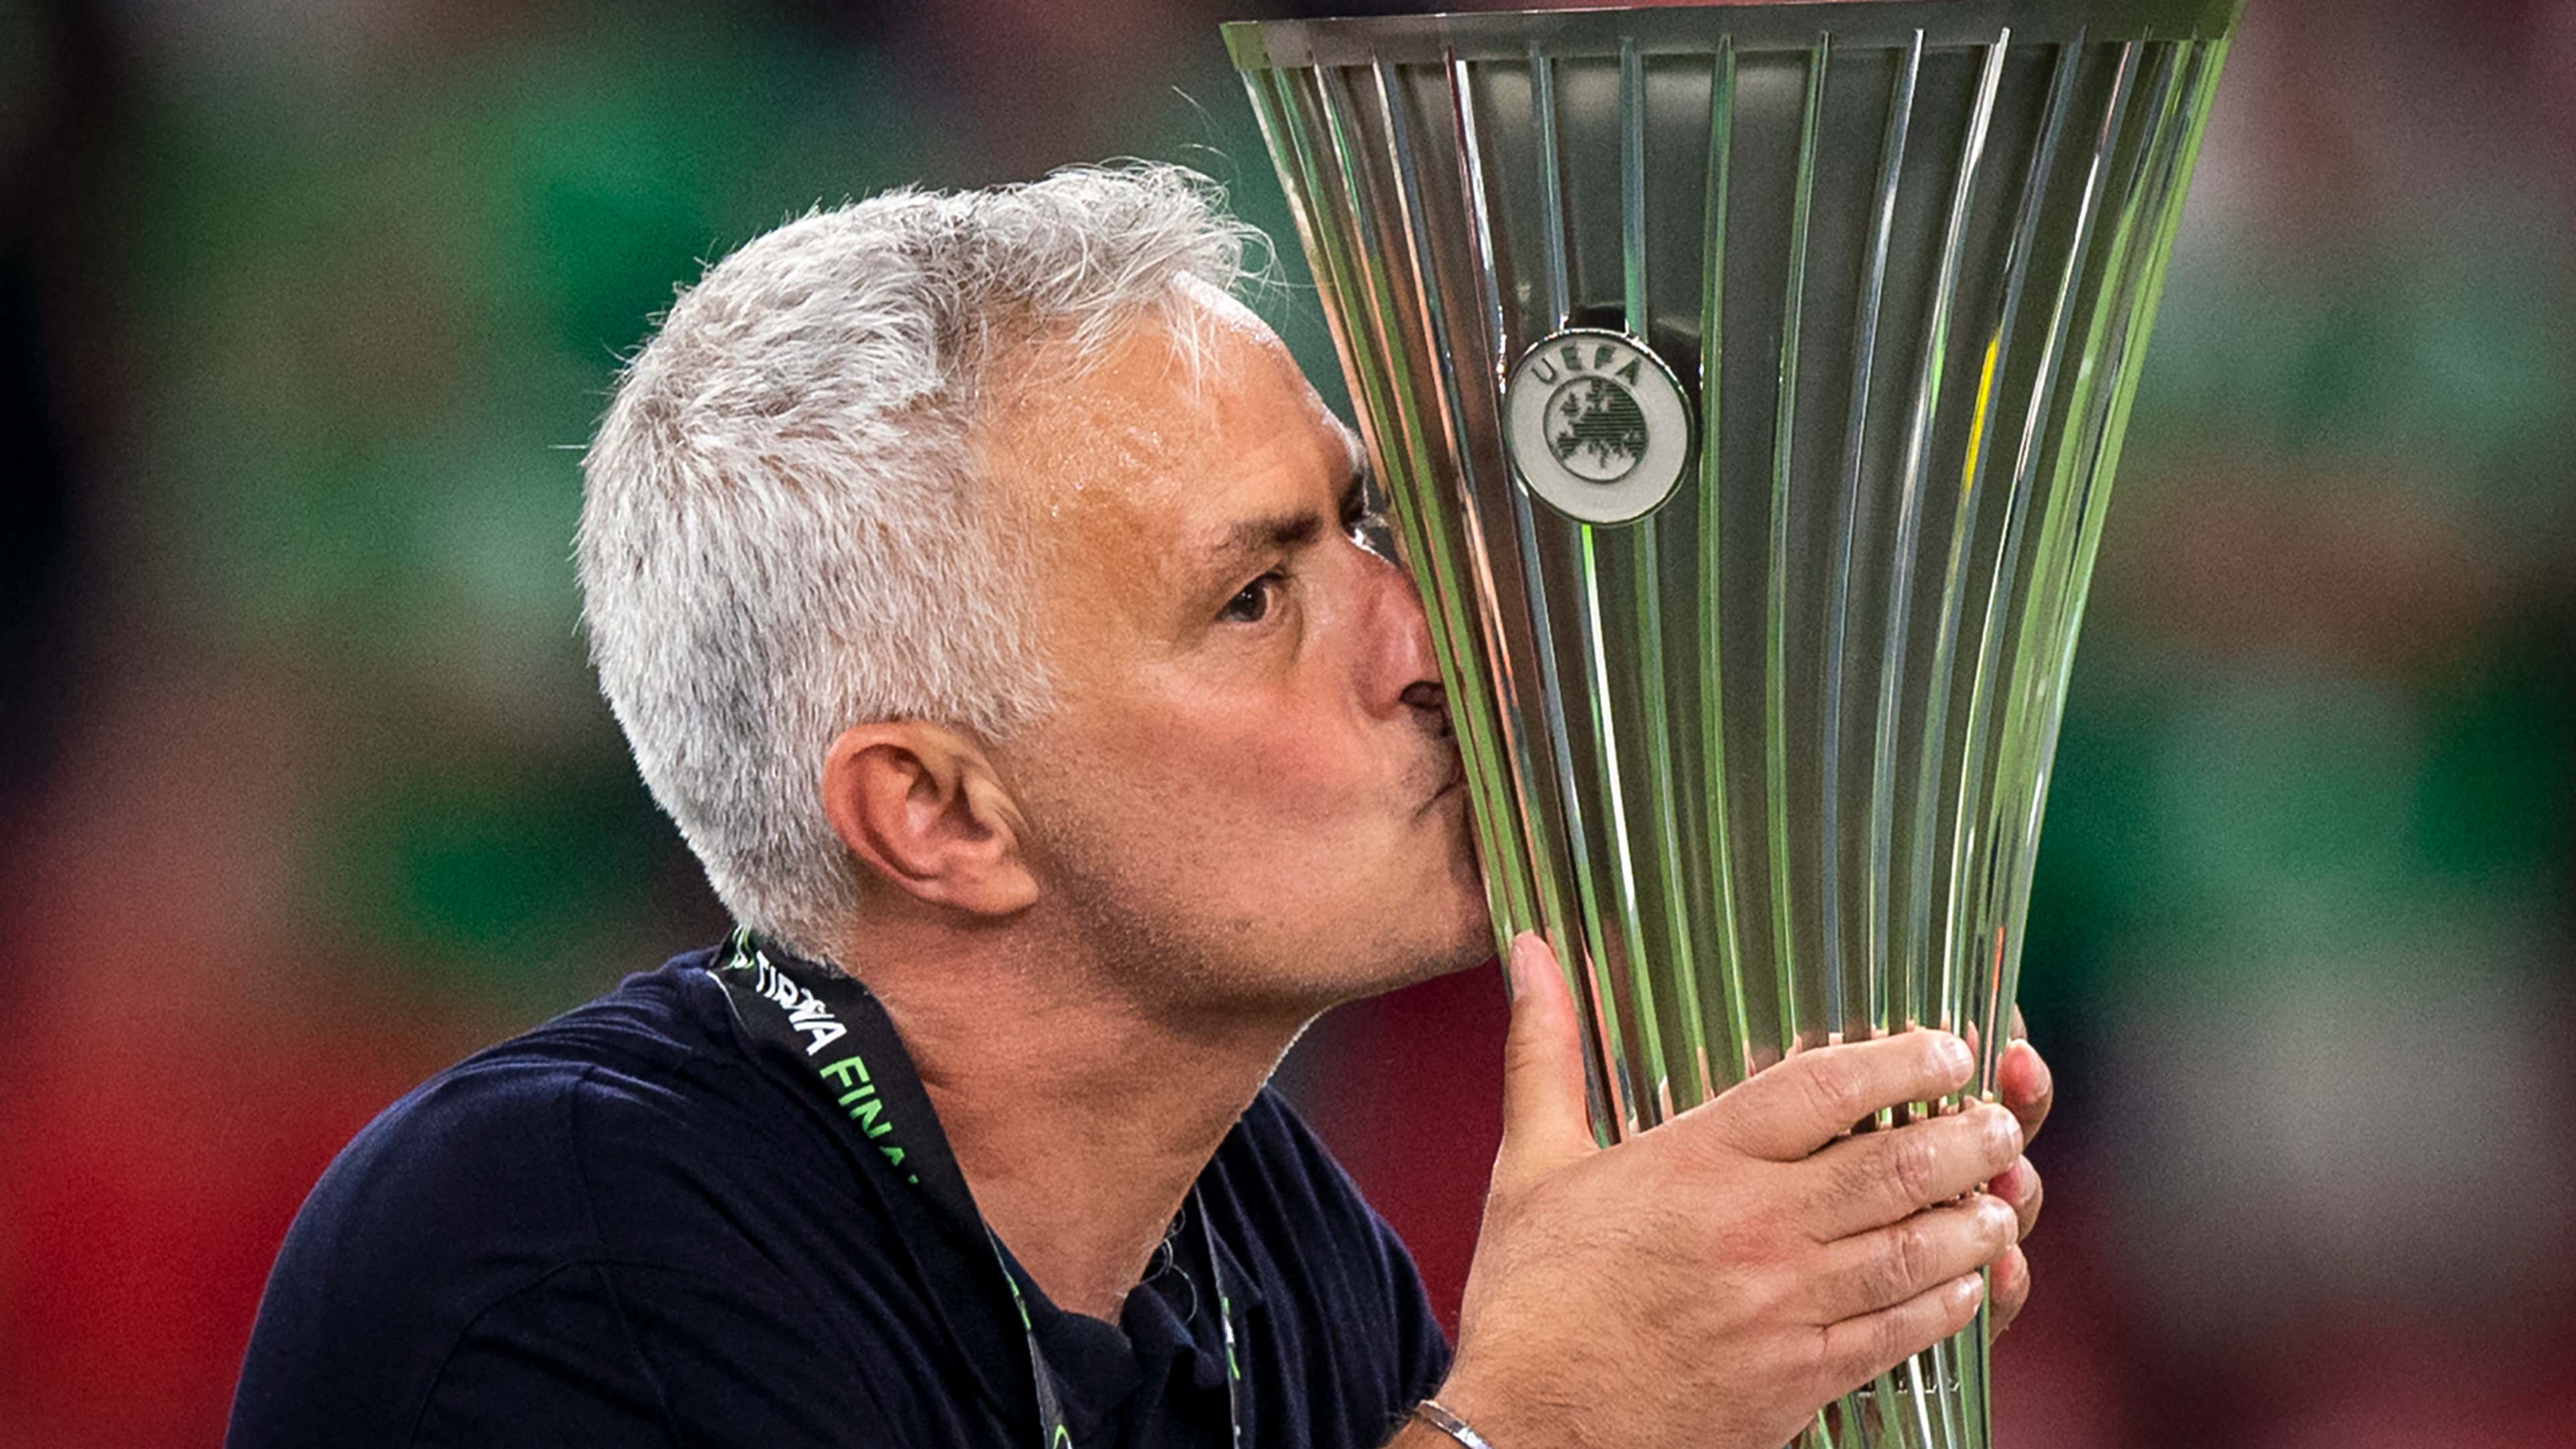 Jose Mourinho Europa Conference League trophy